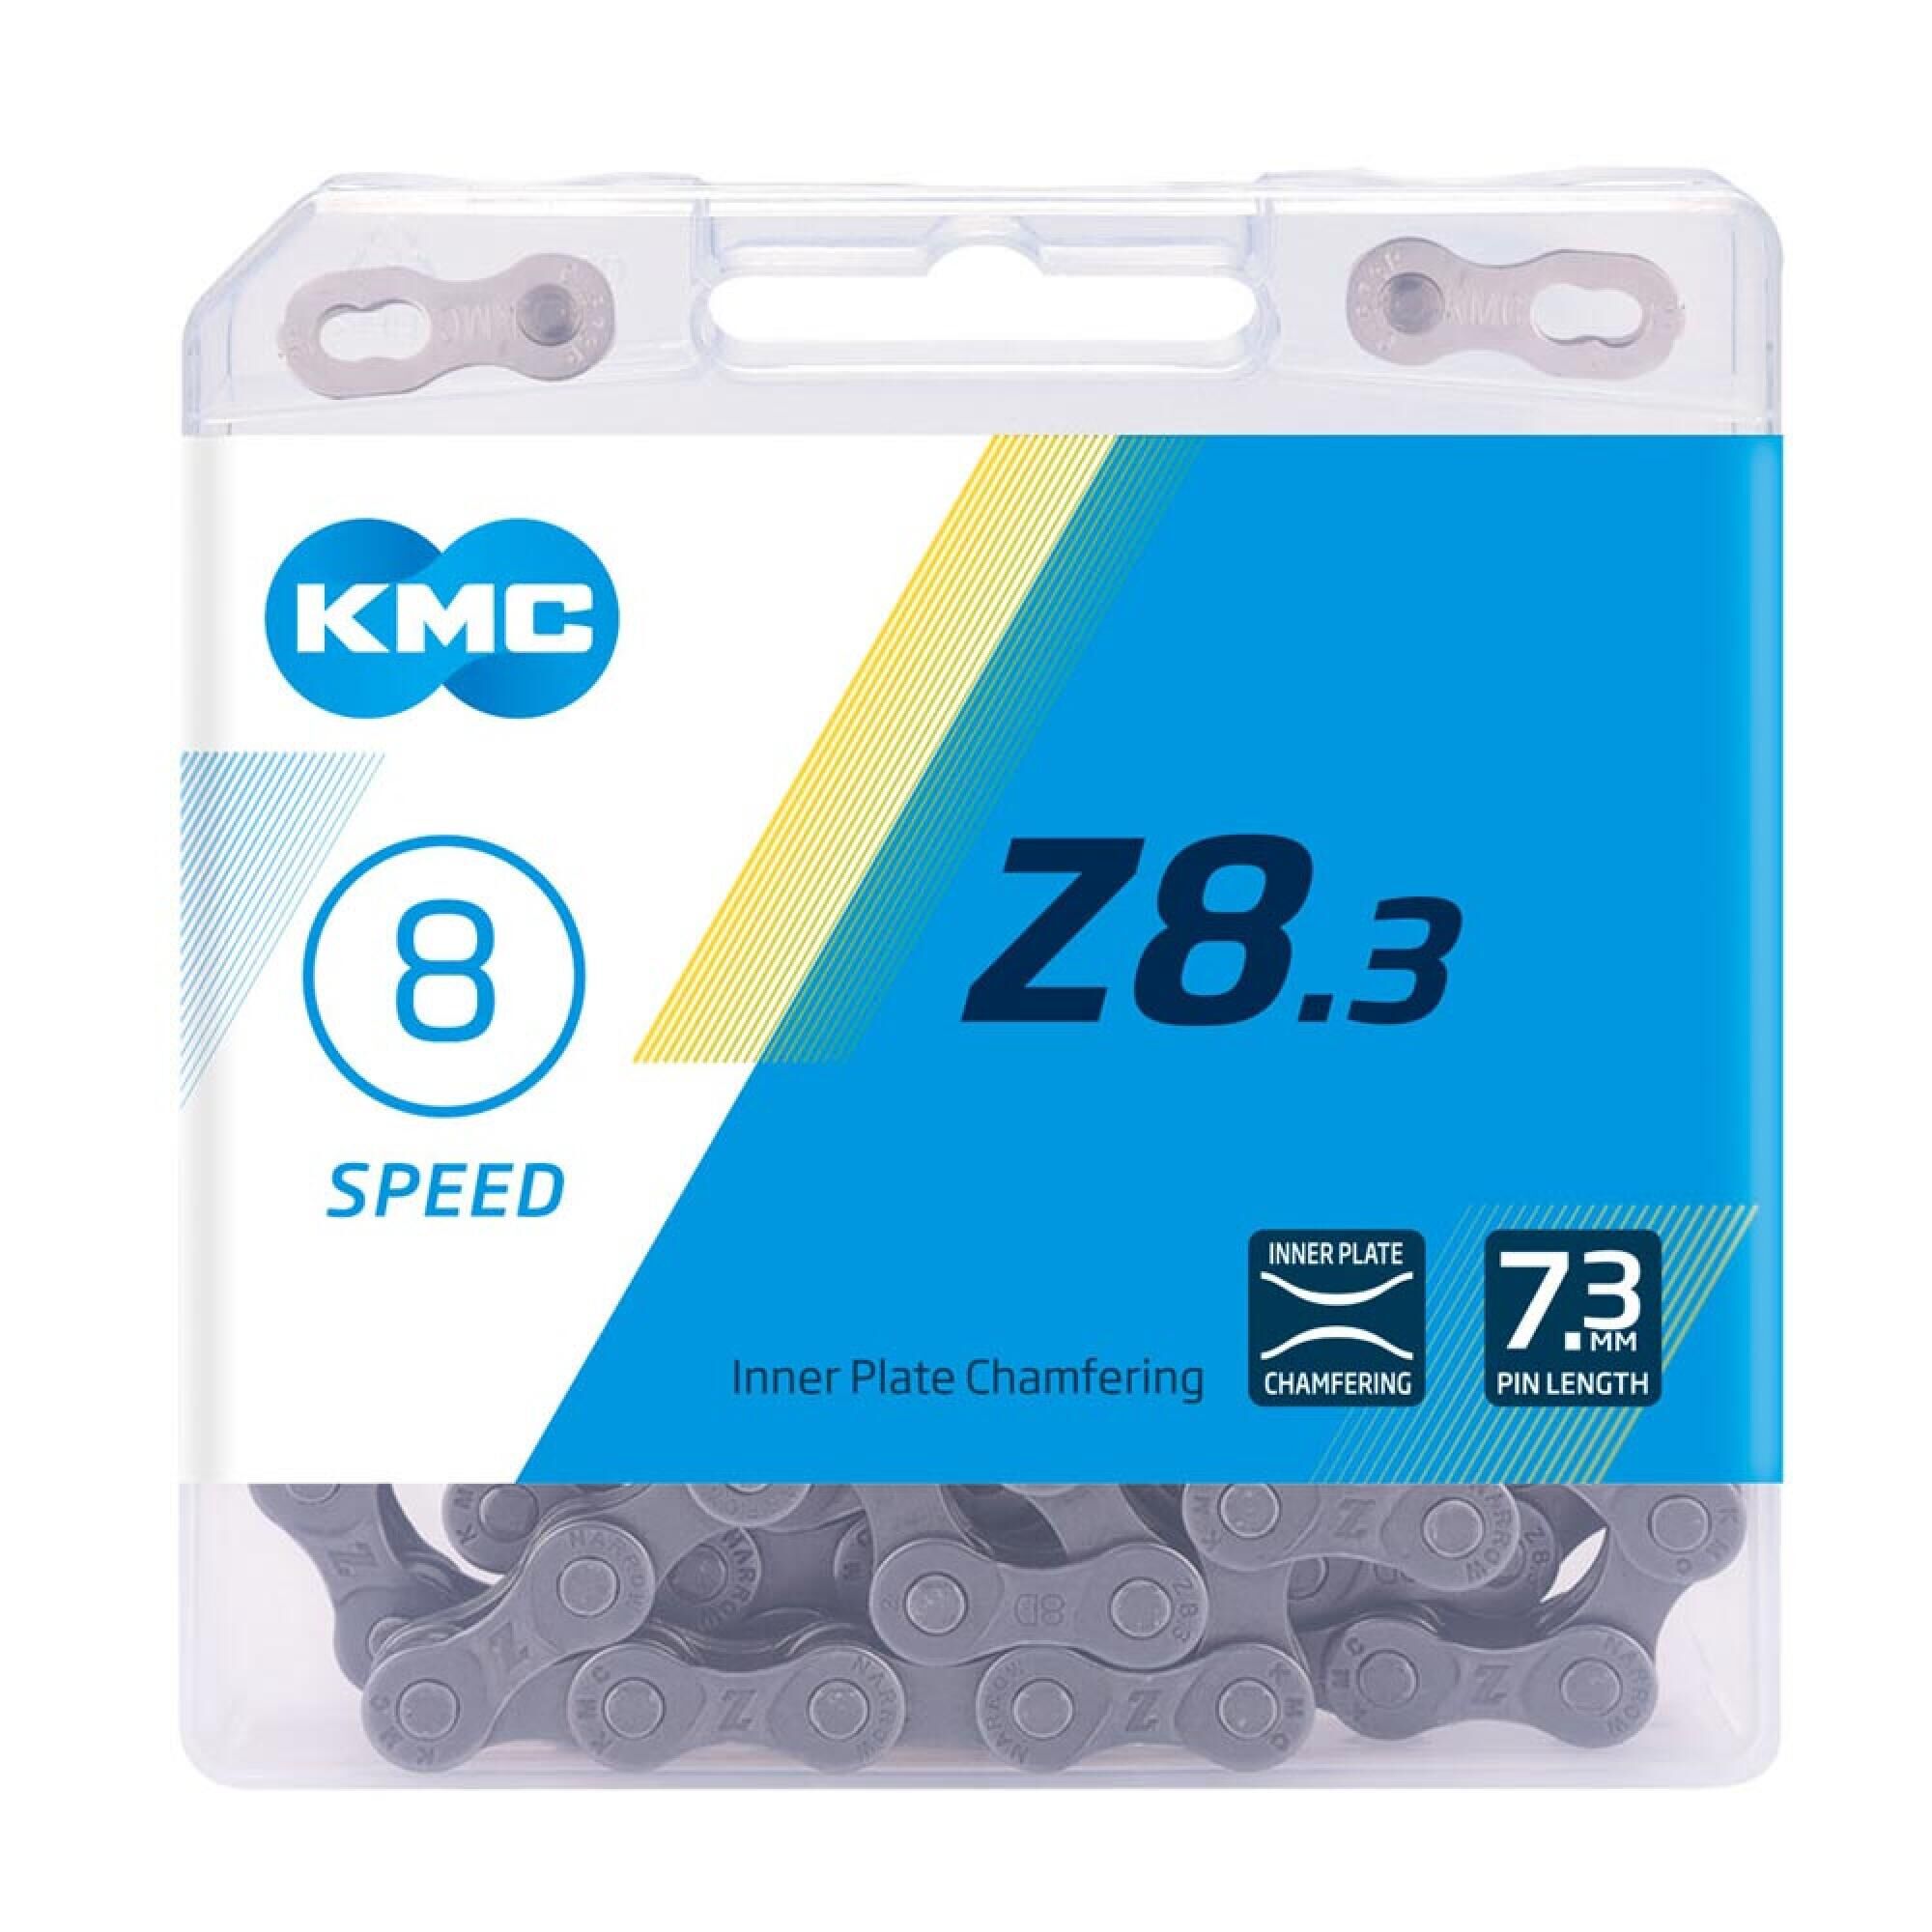 KMC KMC 5-8 Speed Bike Chain Z8 7.3mm 114 links